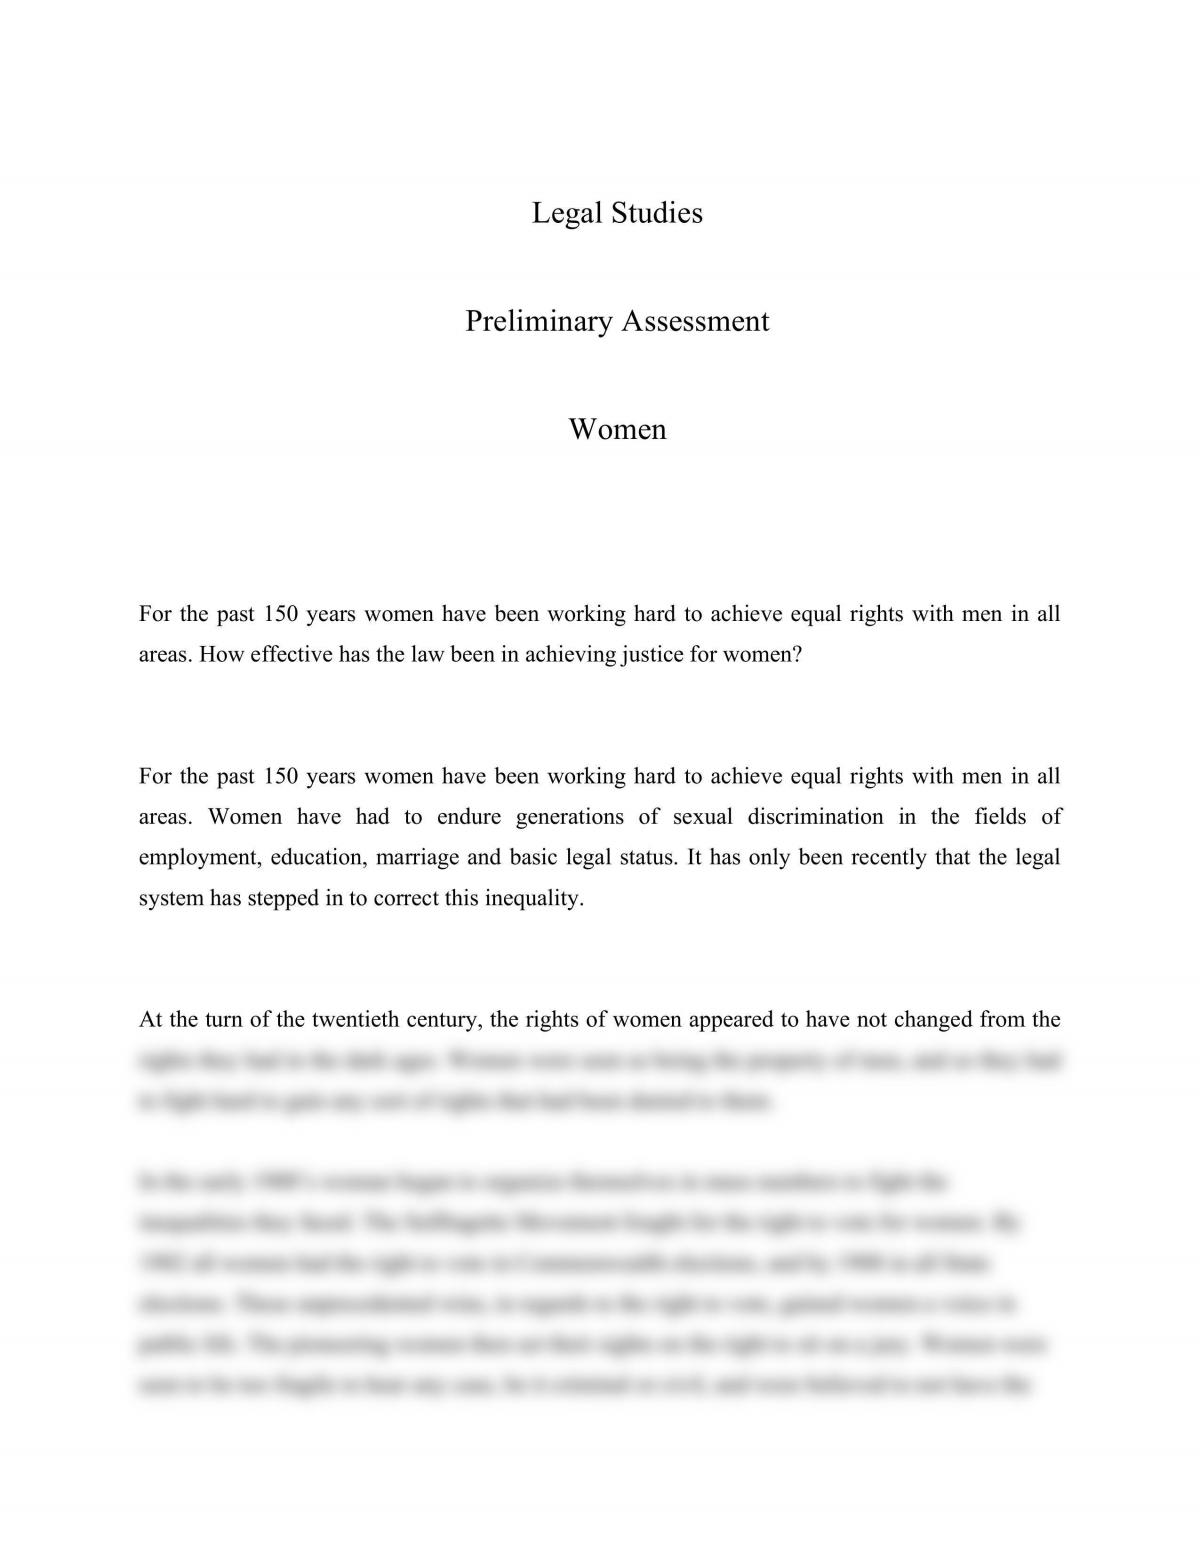 equal rights essay